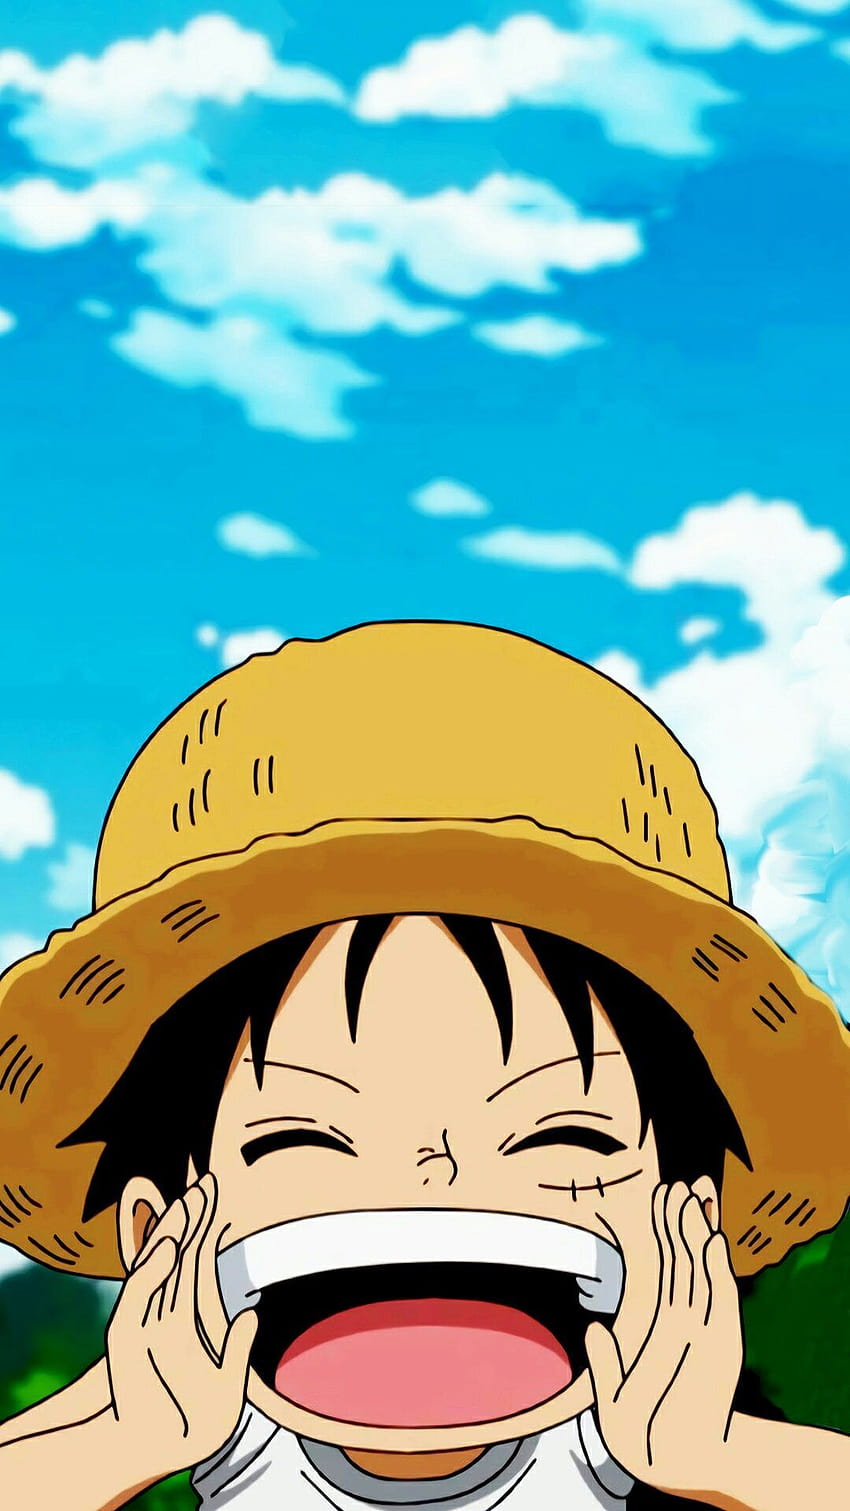 Hình nền điện thoại Luffy One Piece: Đừng bỏ qua cơ hội sở hữu hình nền điện thoại Luffy One Piece độc đáo và phong cách. Hình ảnh Luffy bên cạnh băng hải tặc Straw Hat sẽ khiến bạn cảm thấy như mình đã trở thành một phần của thế giới One Piece.